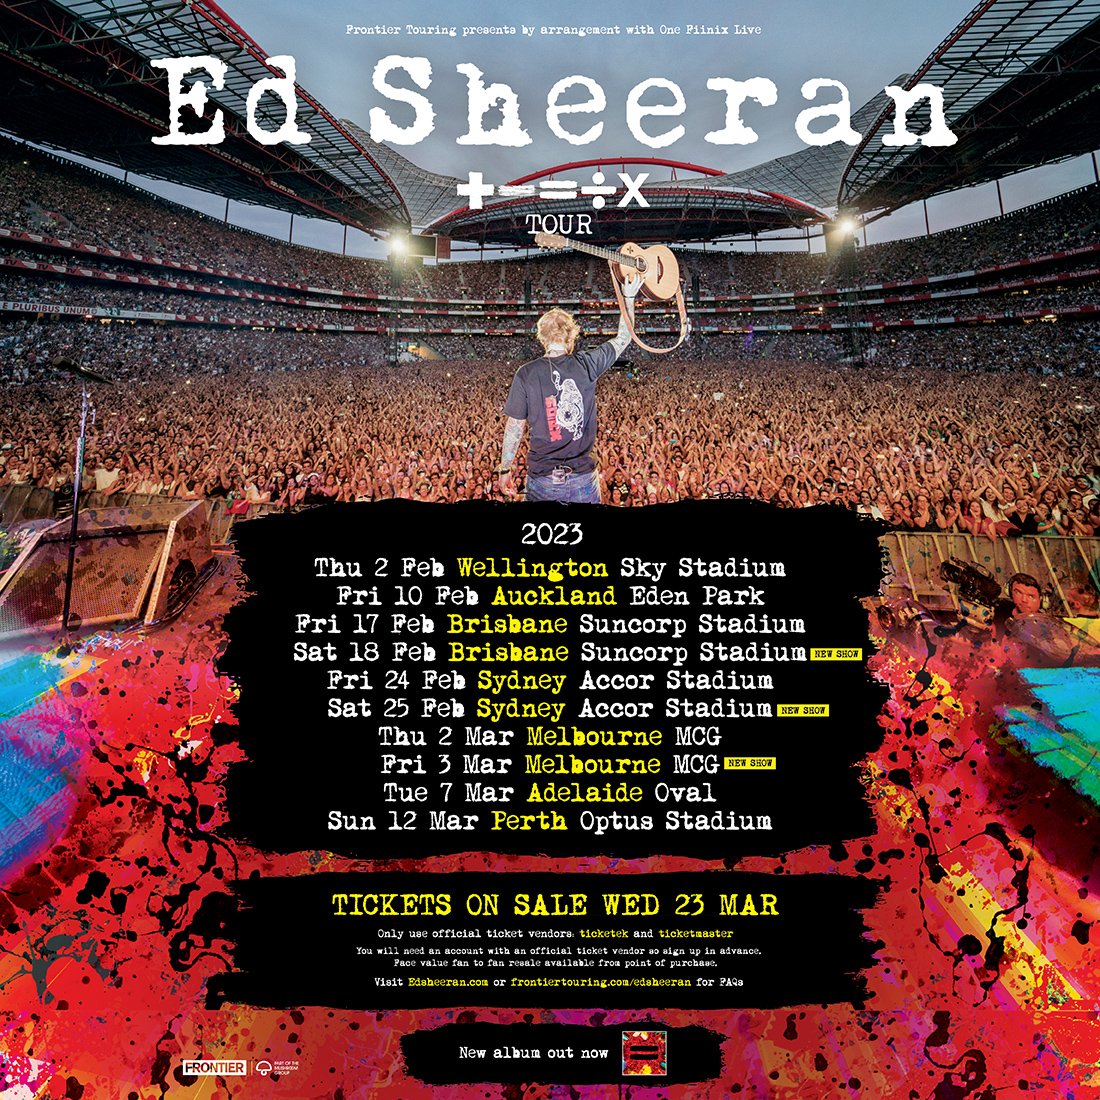 ed sheeran tour dates 2023 australia